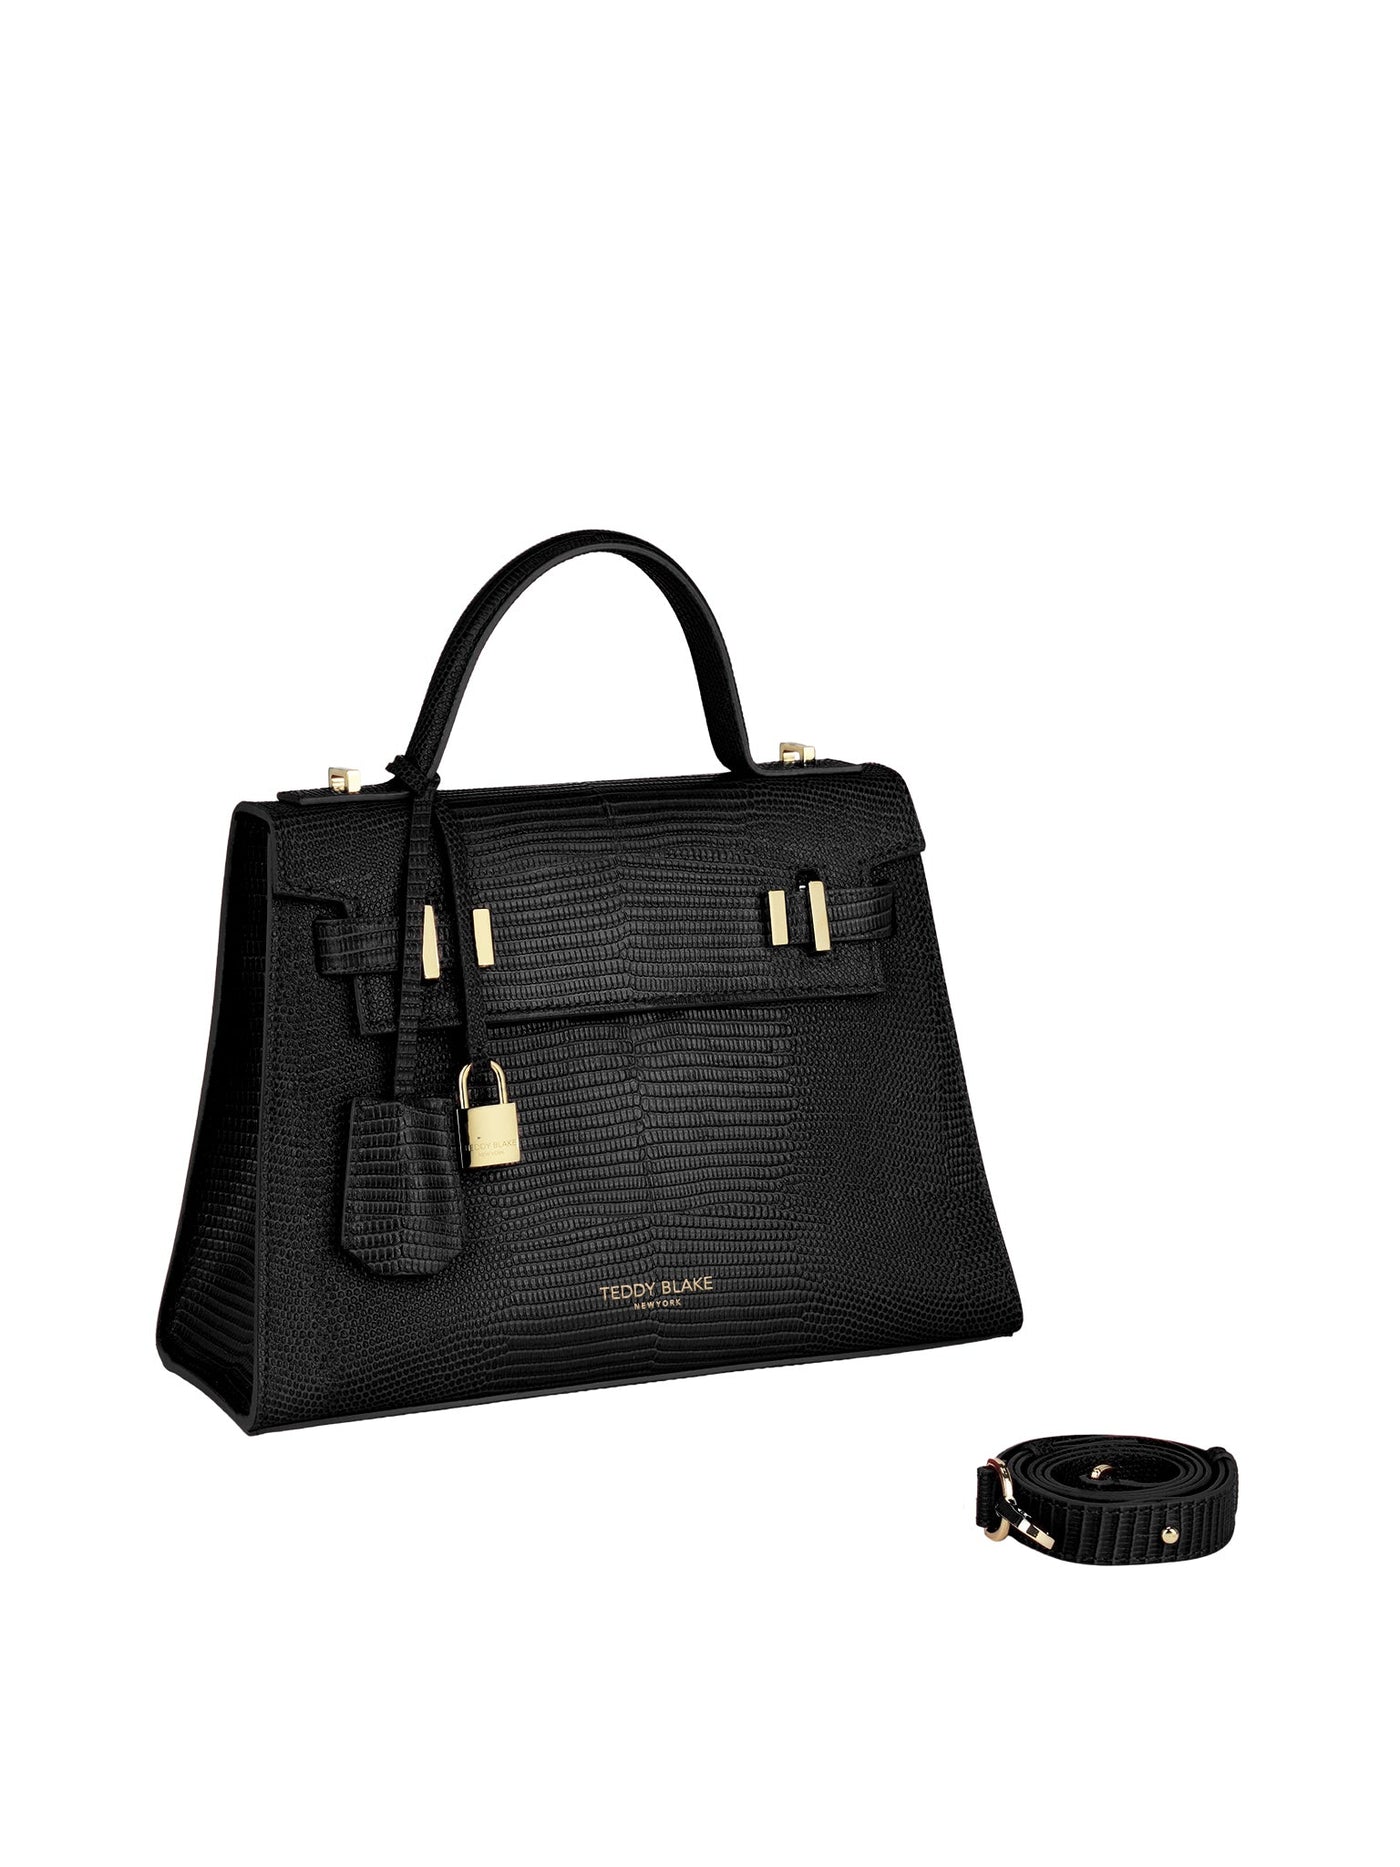 TEDDY BLAKE BLACK Leather Eva Vintage Gold 11” Retail $439 $281.00